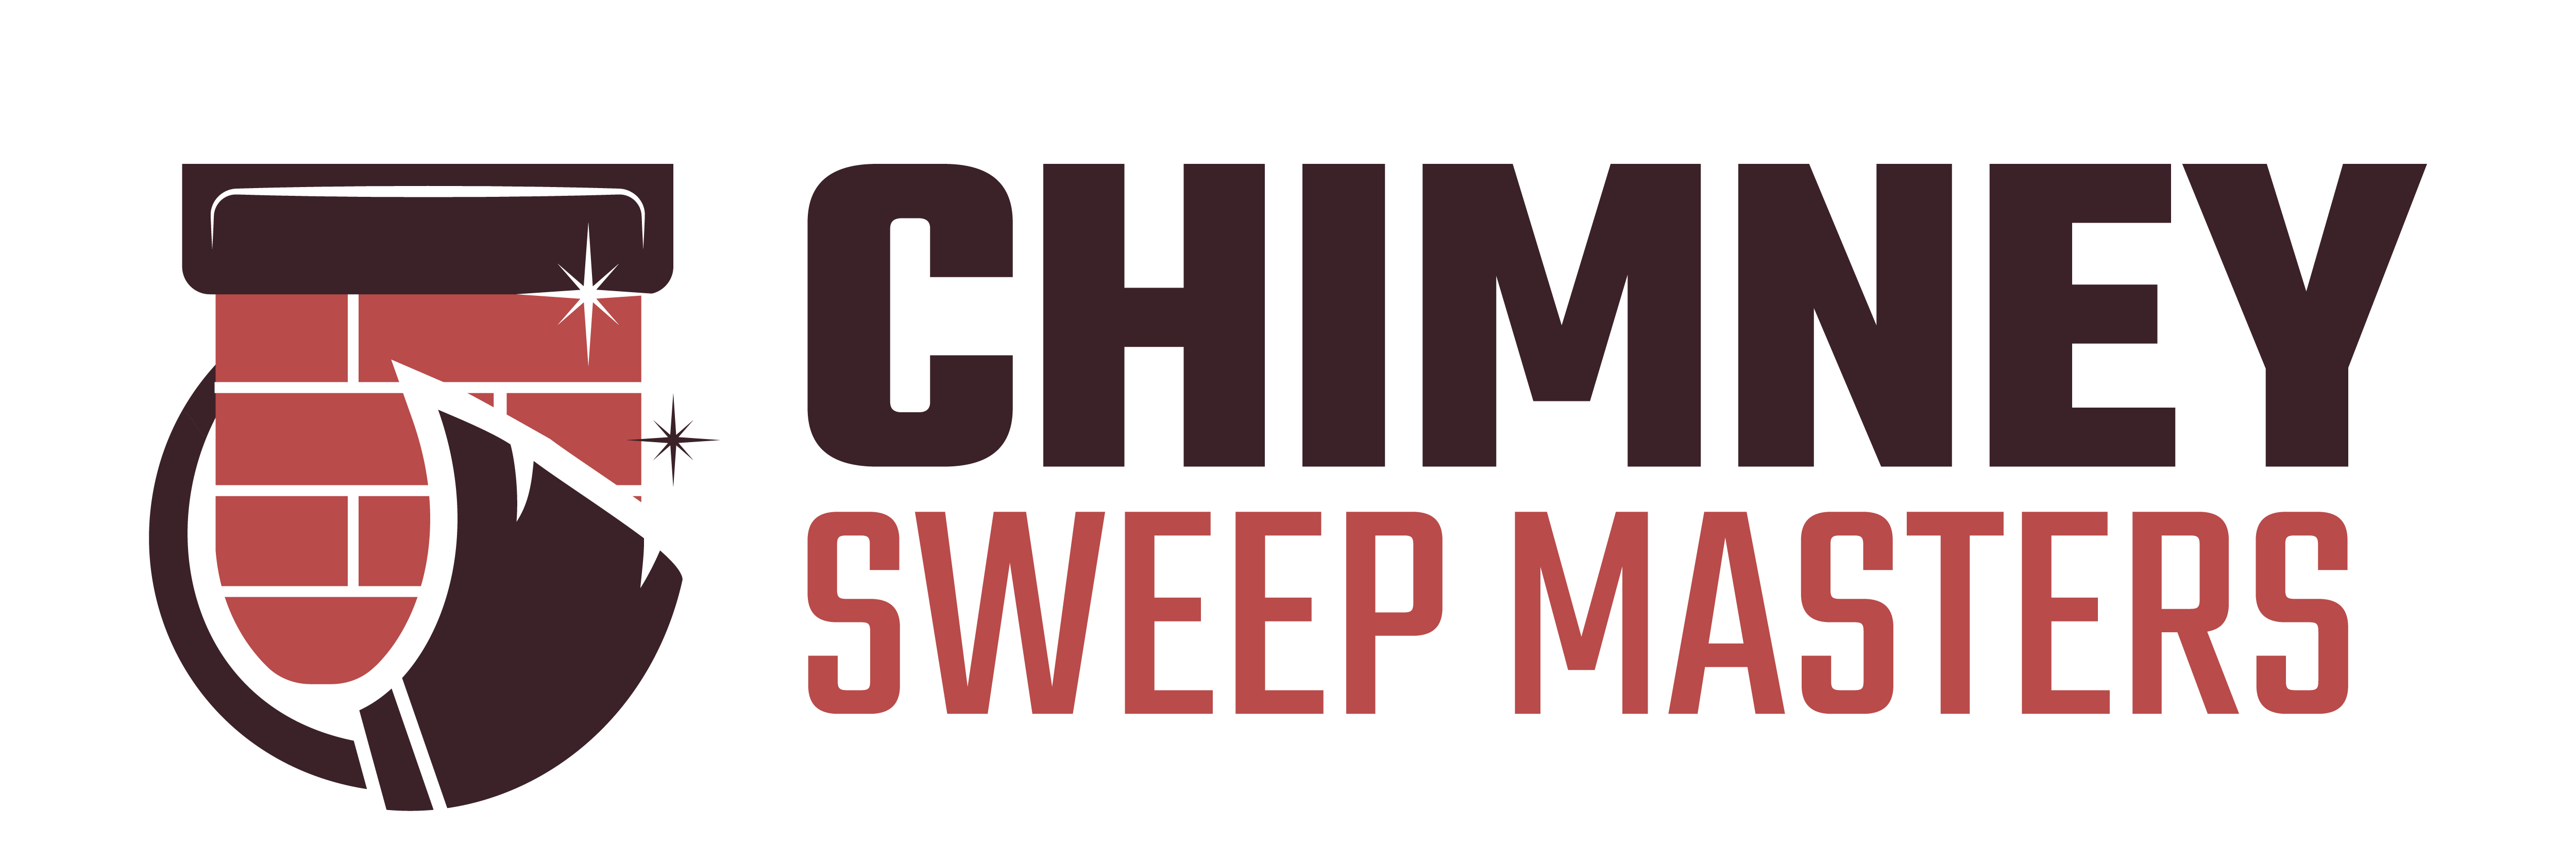 Chimney Sweep Masters Lakewood Logo